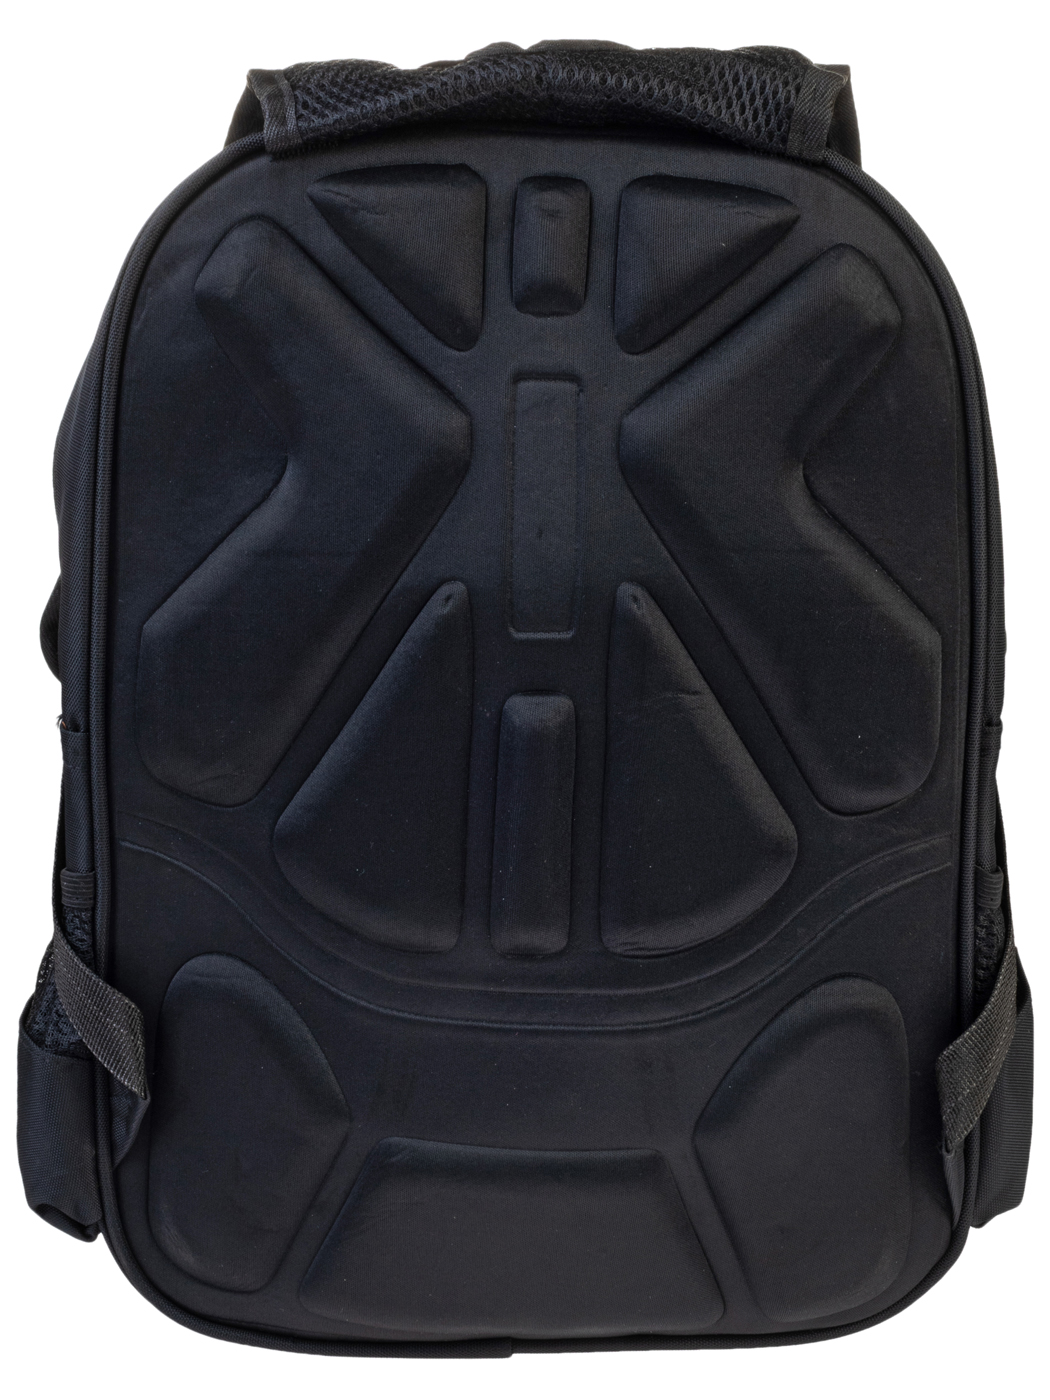 Рюкзак школьный 21R450157 черный,серый изображение 2